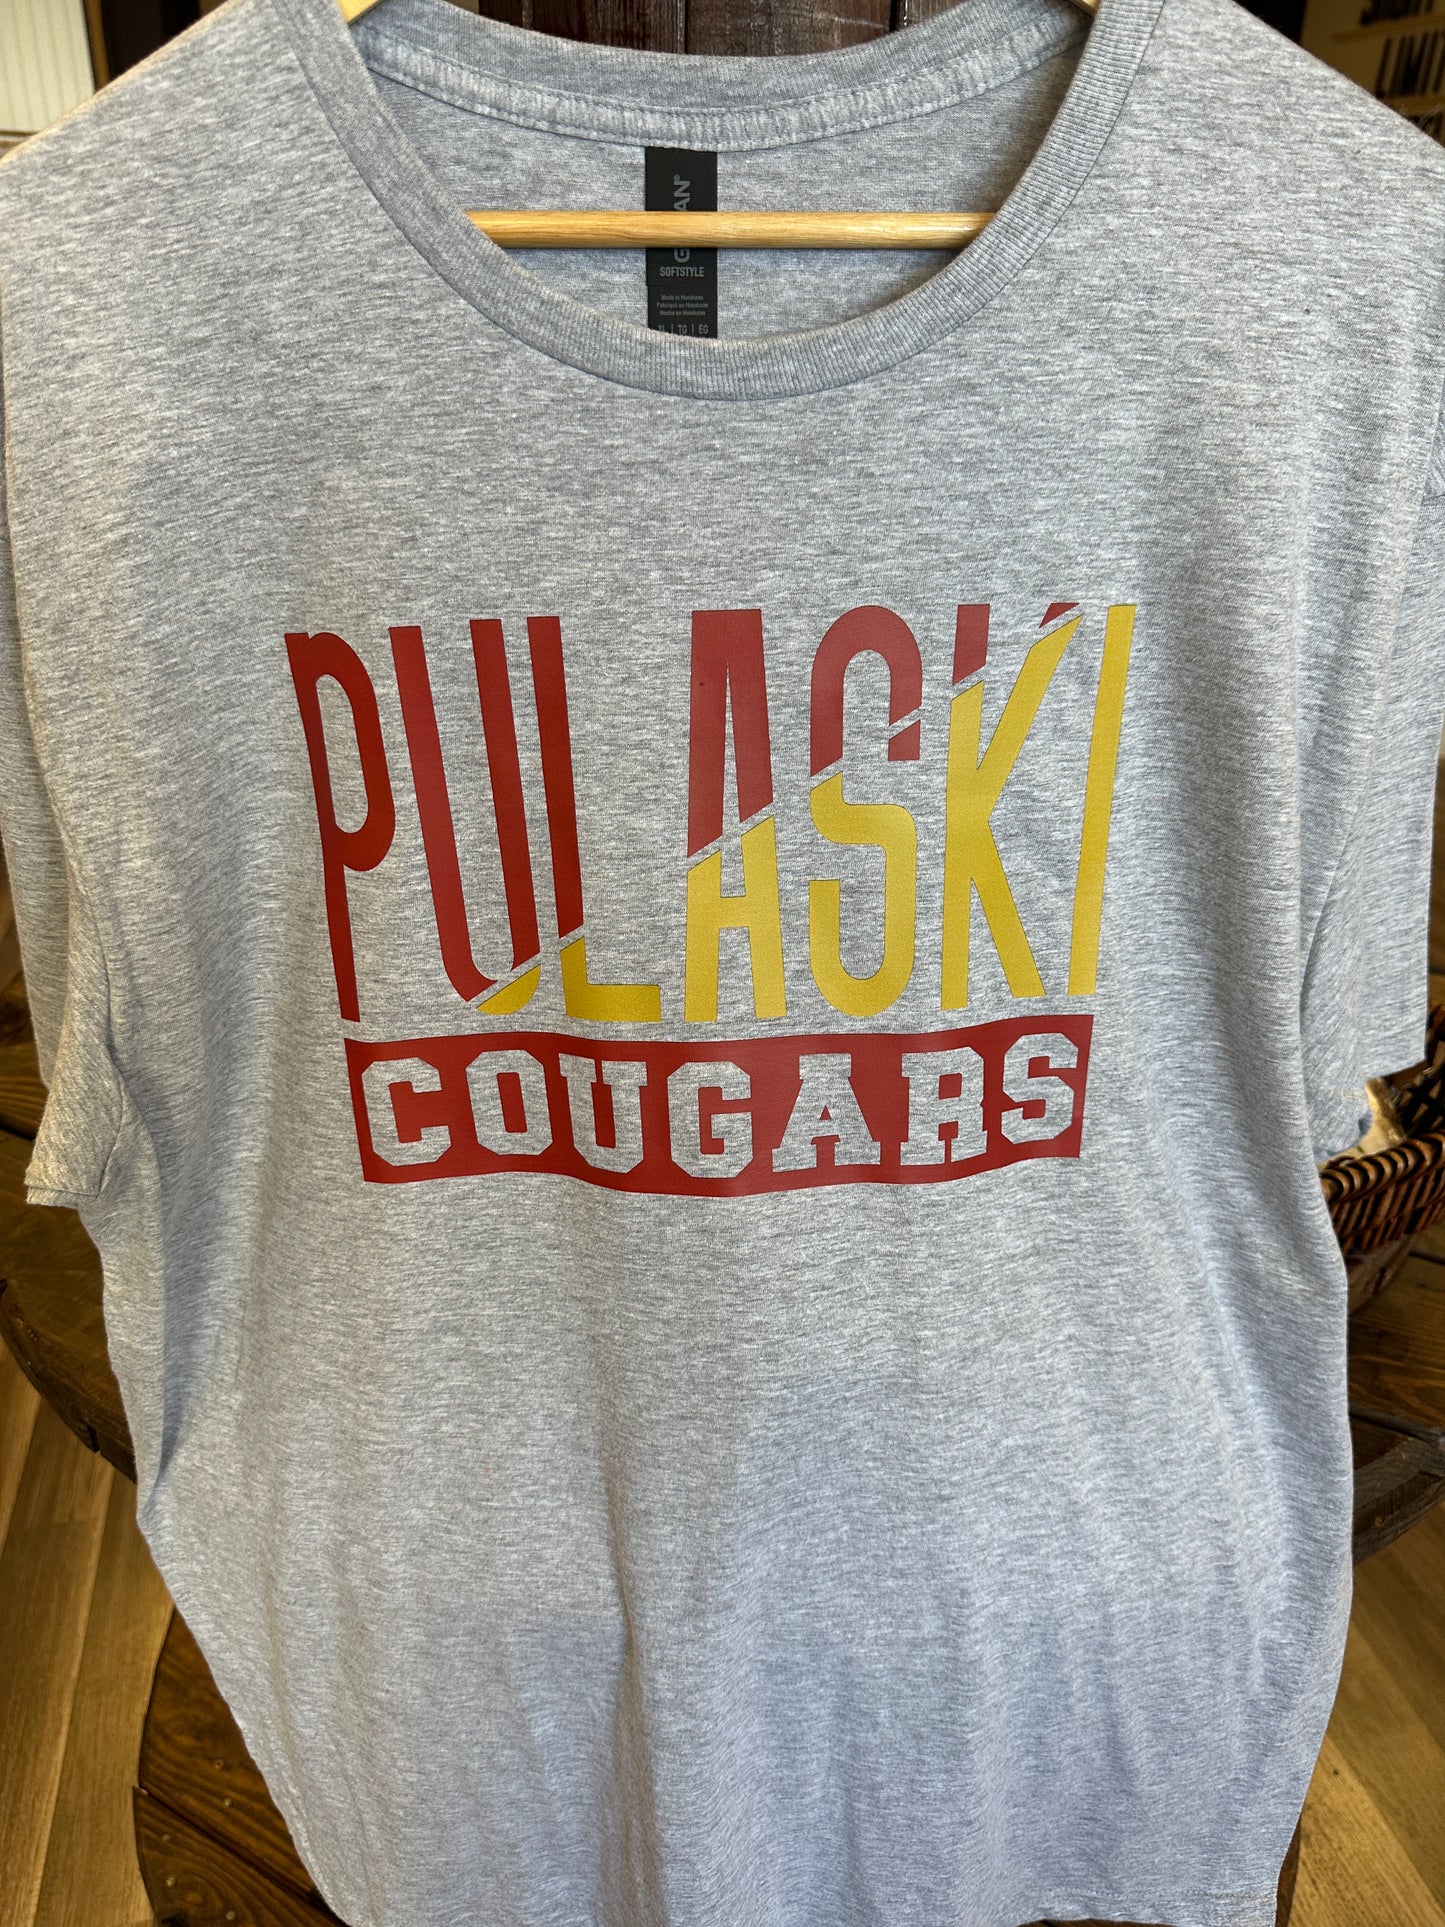 Pulaski Cougar shirt